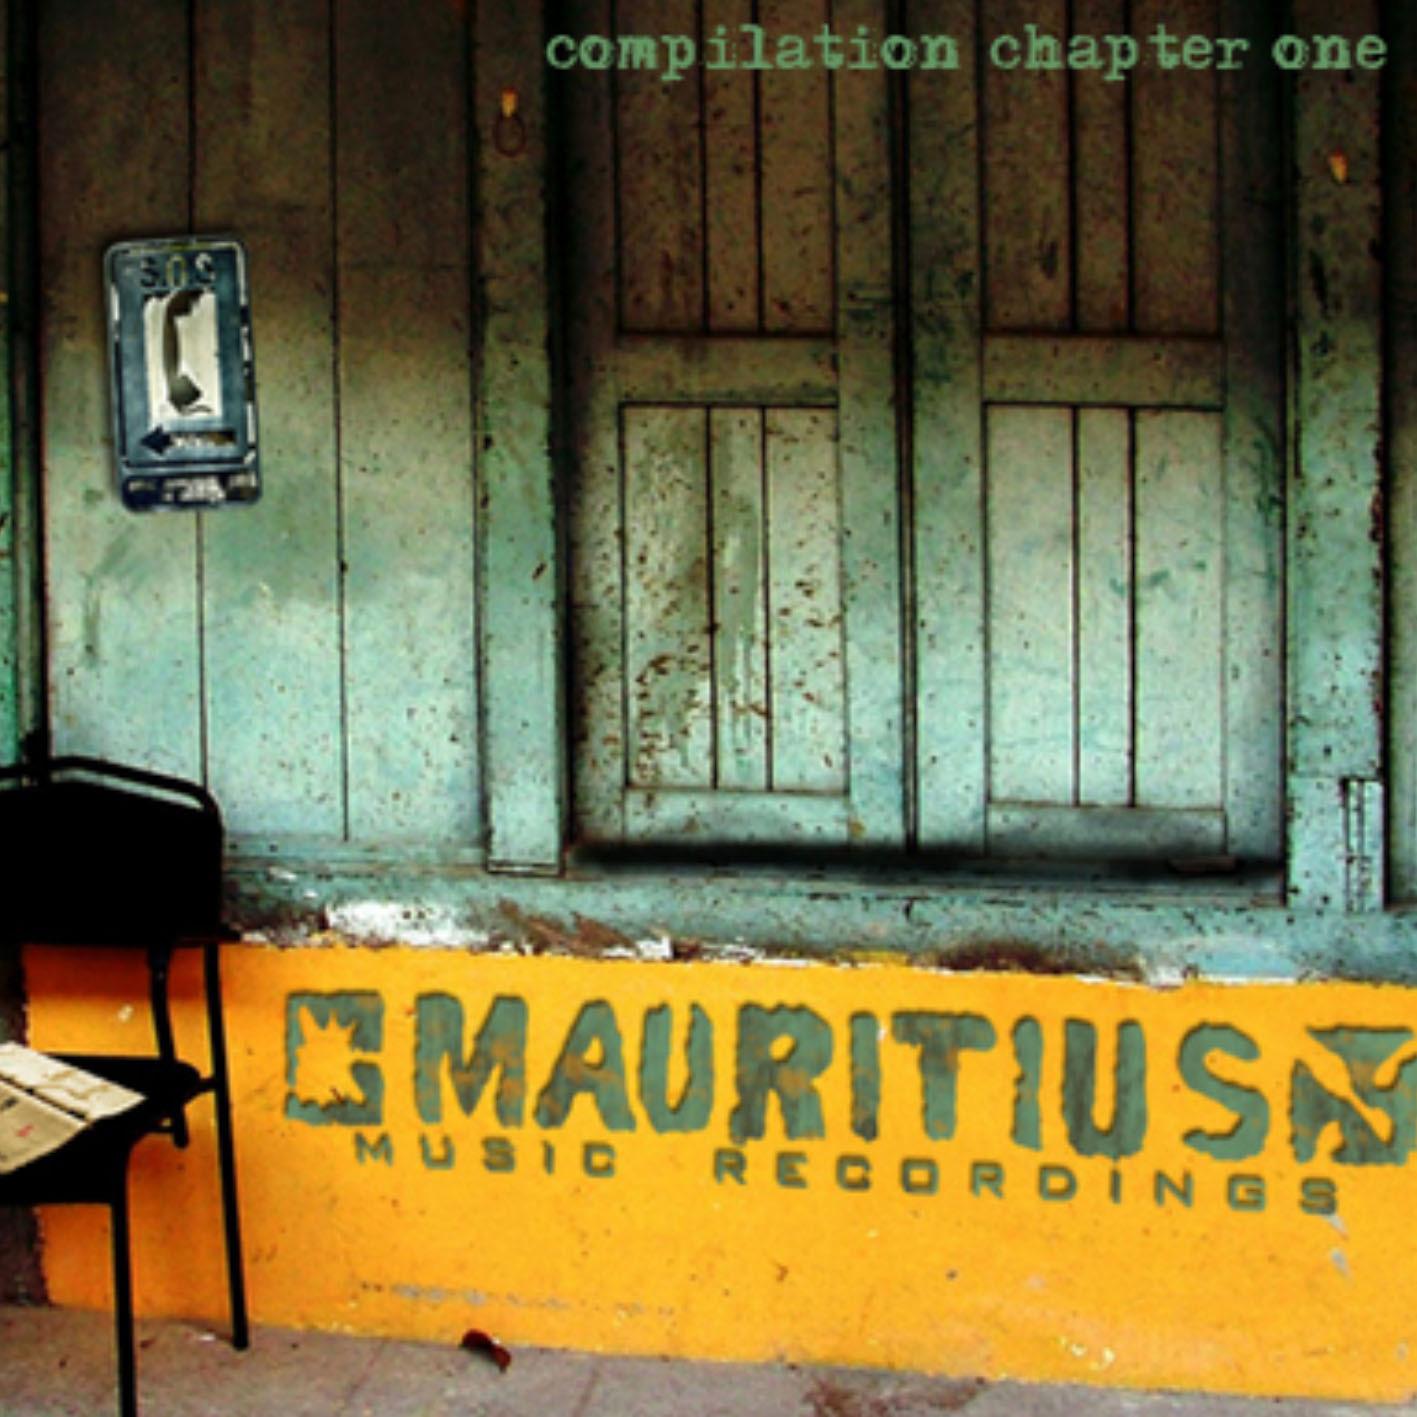 Mauritius Music Recordings Vol. 1